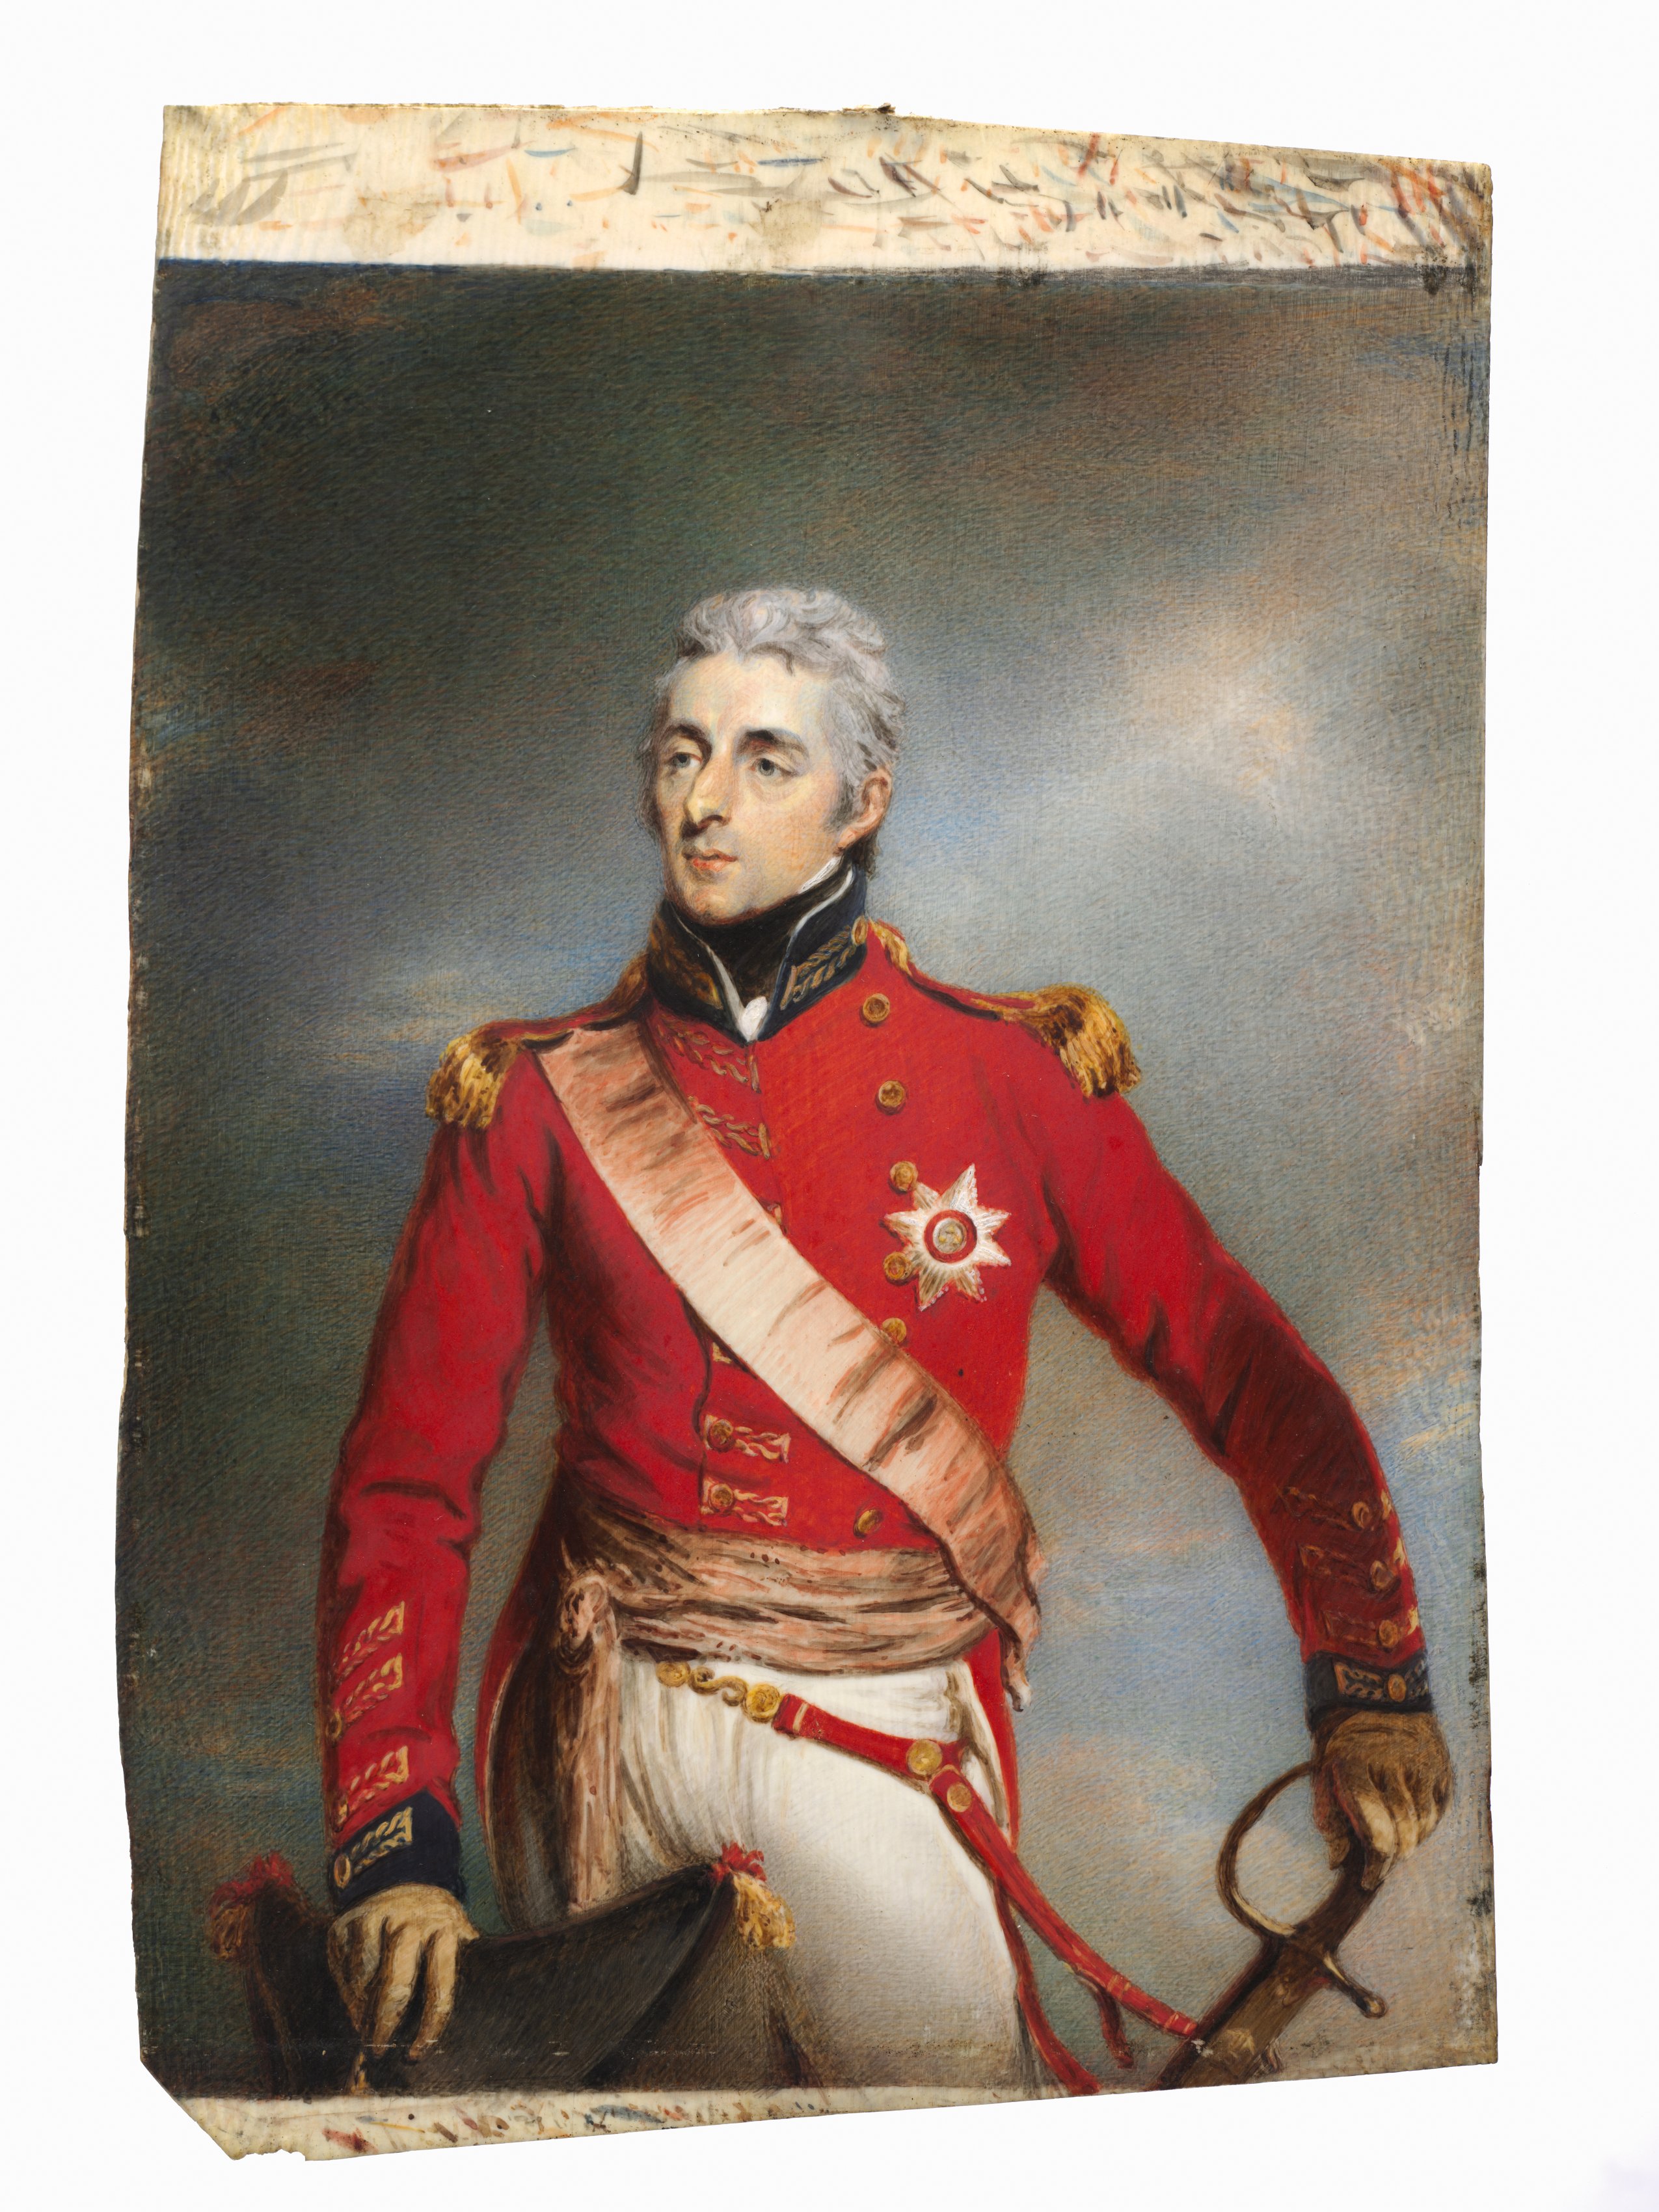 Portrait of Arthur Wellesley, later 1st Duke of Wellington